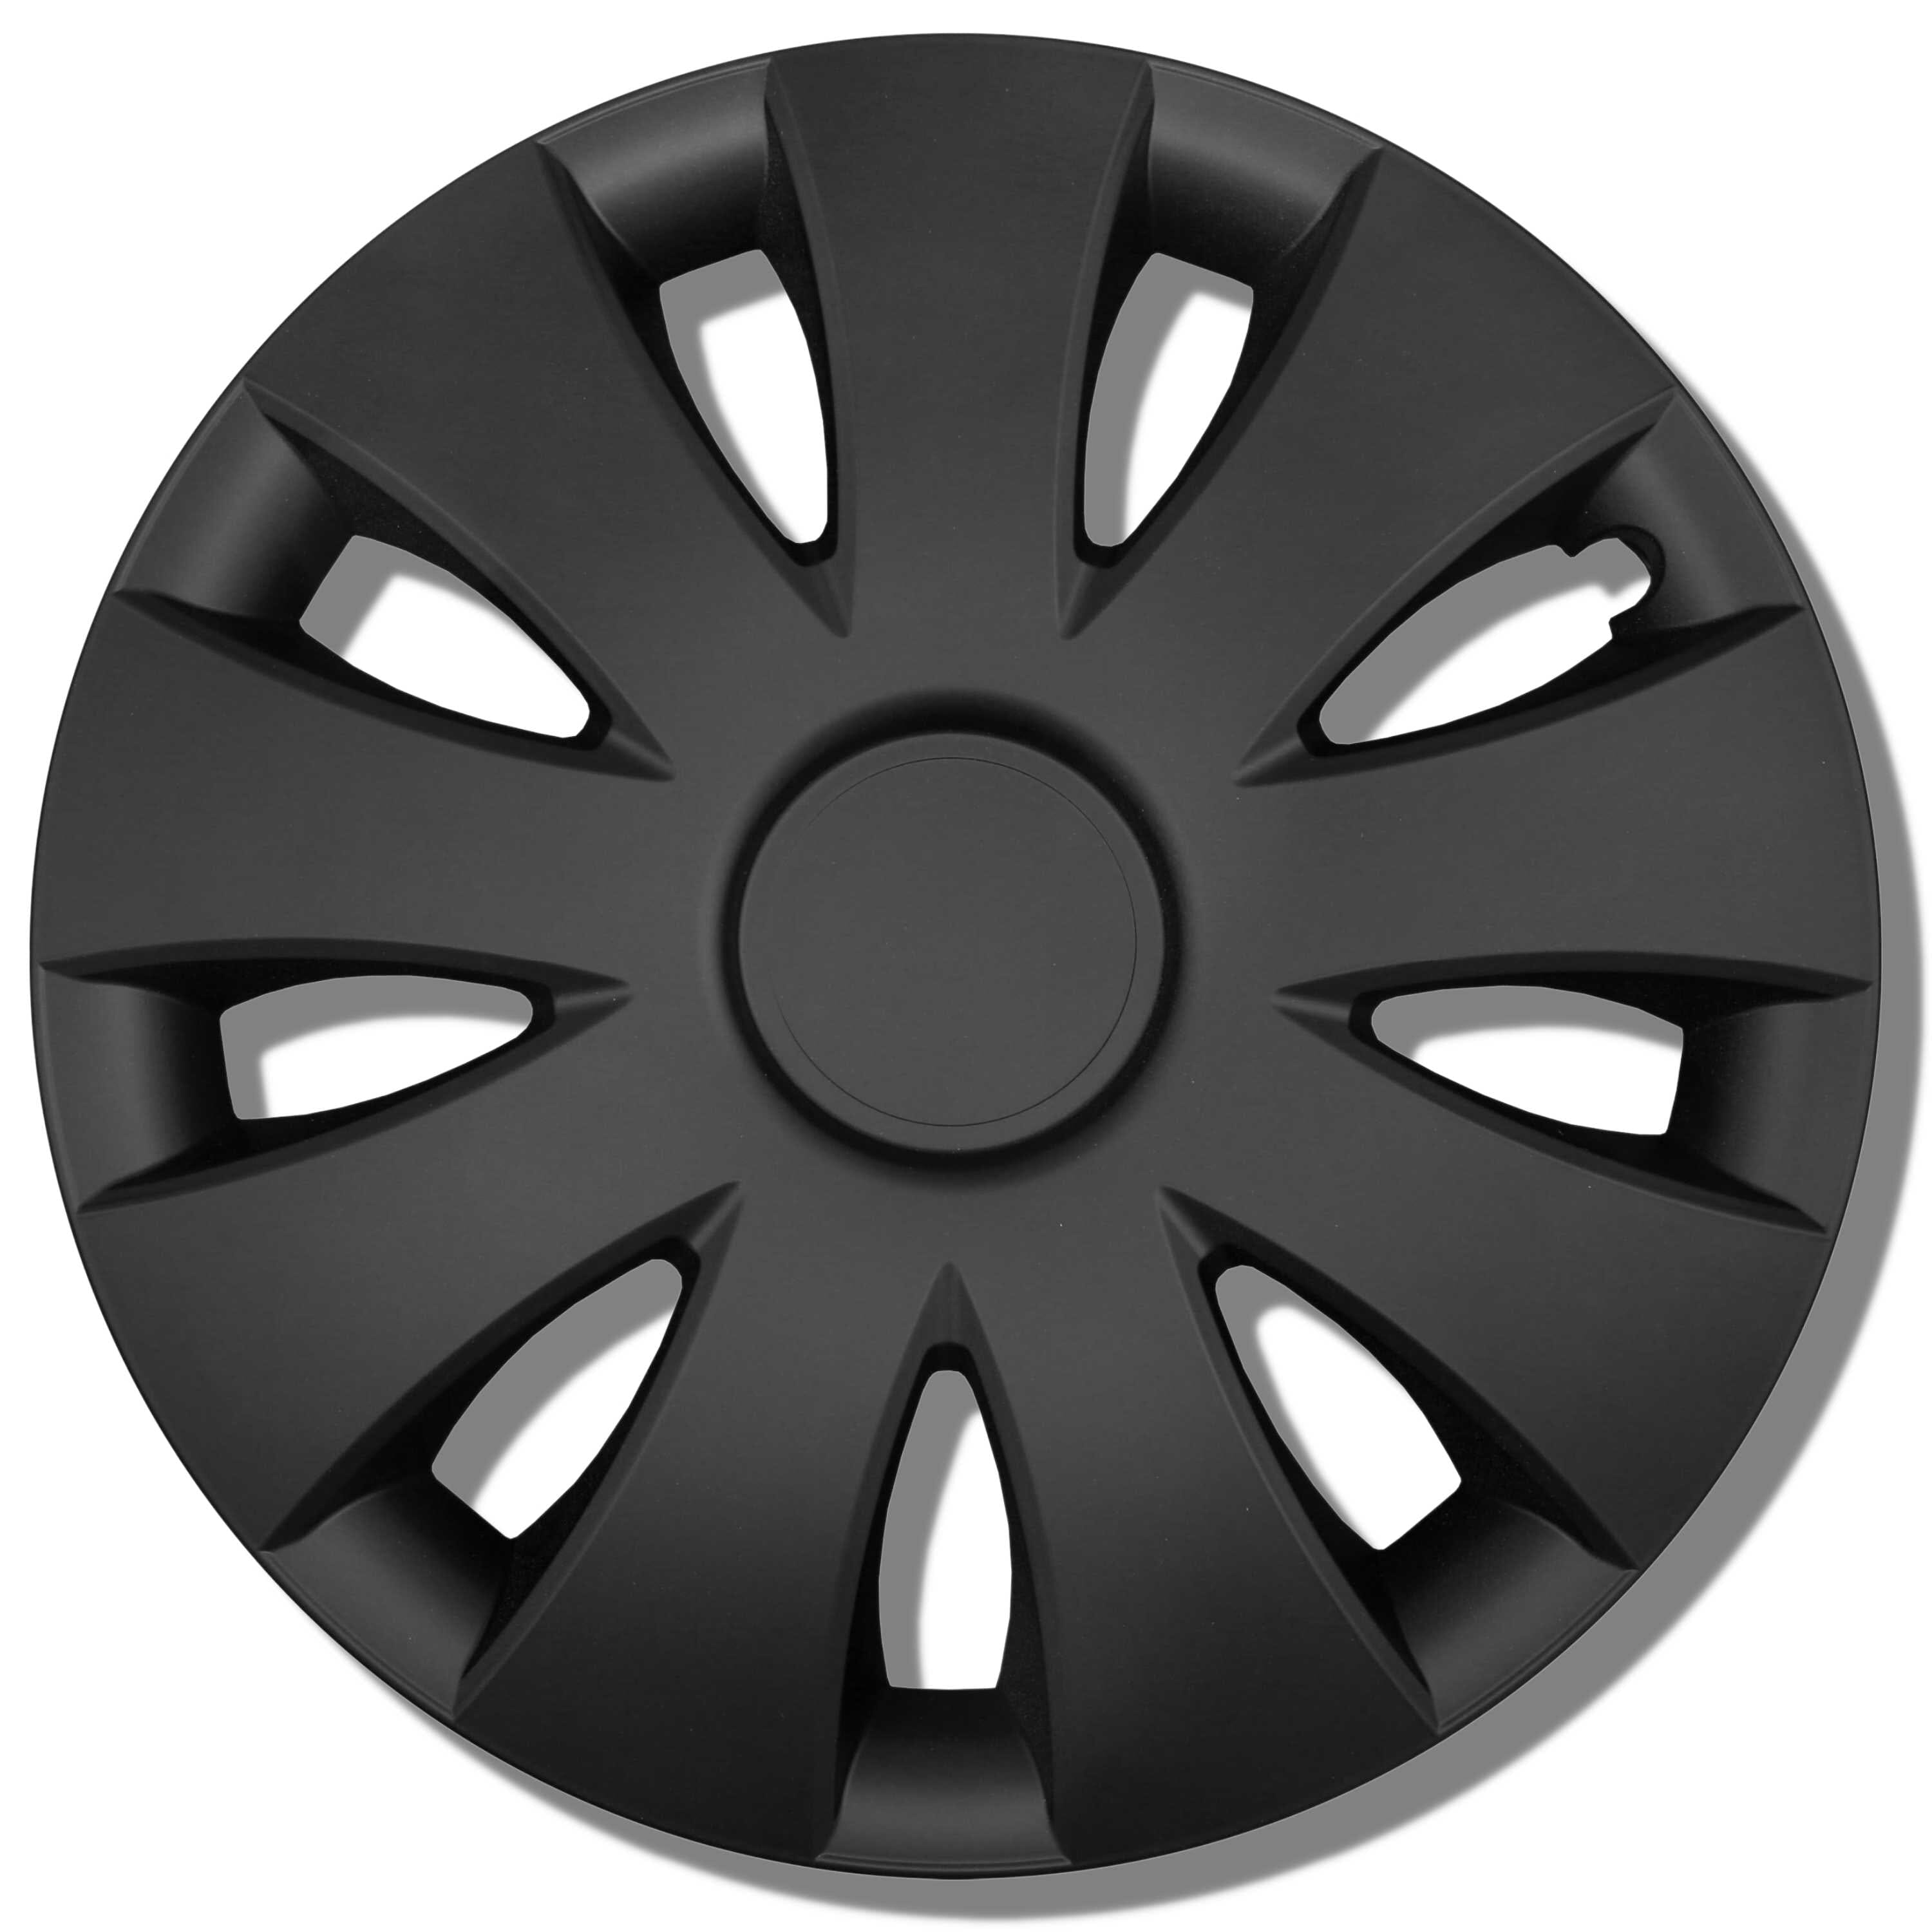 Radkappen silber oder schwarz - 4 Stück Aura Radzierblenden für Stahlfelgen 13-16 Zoll